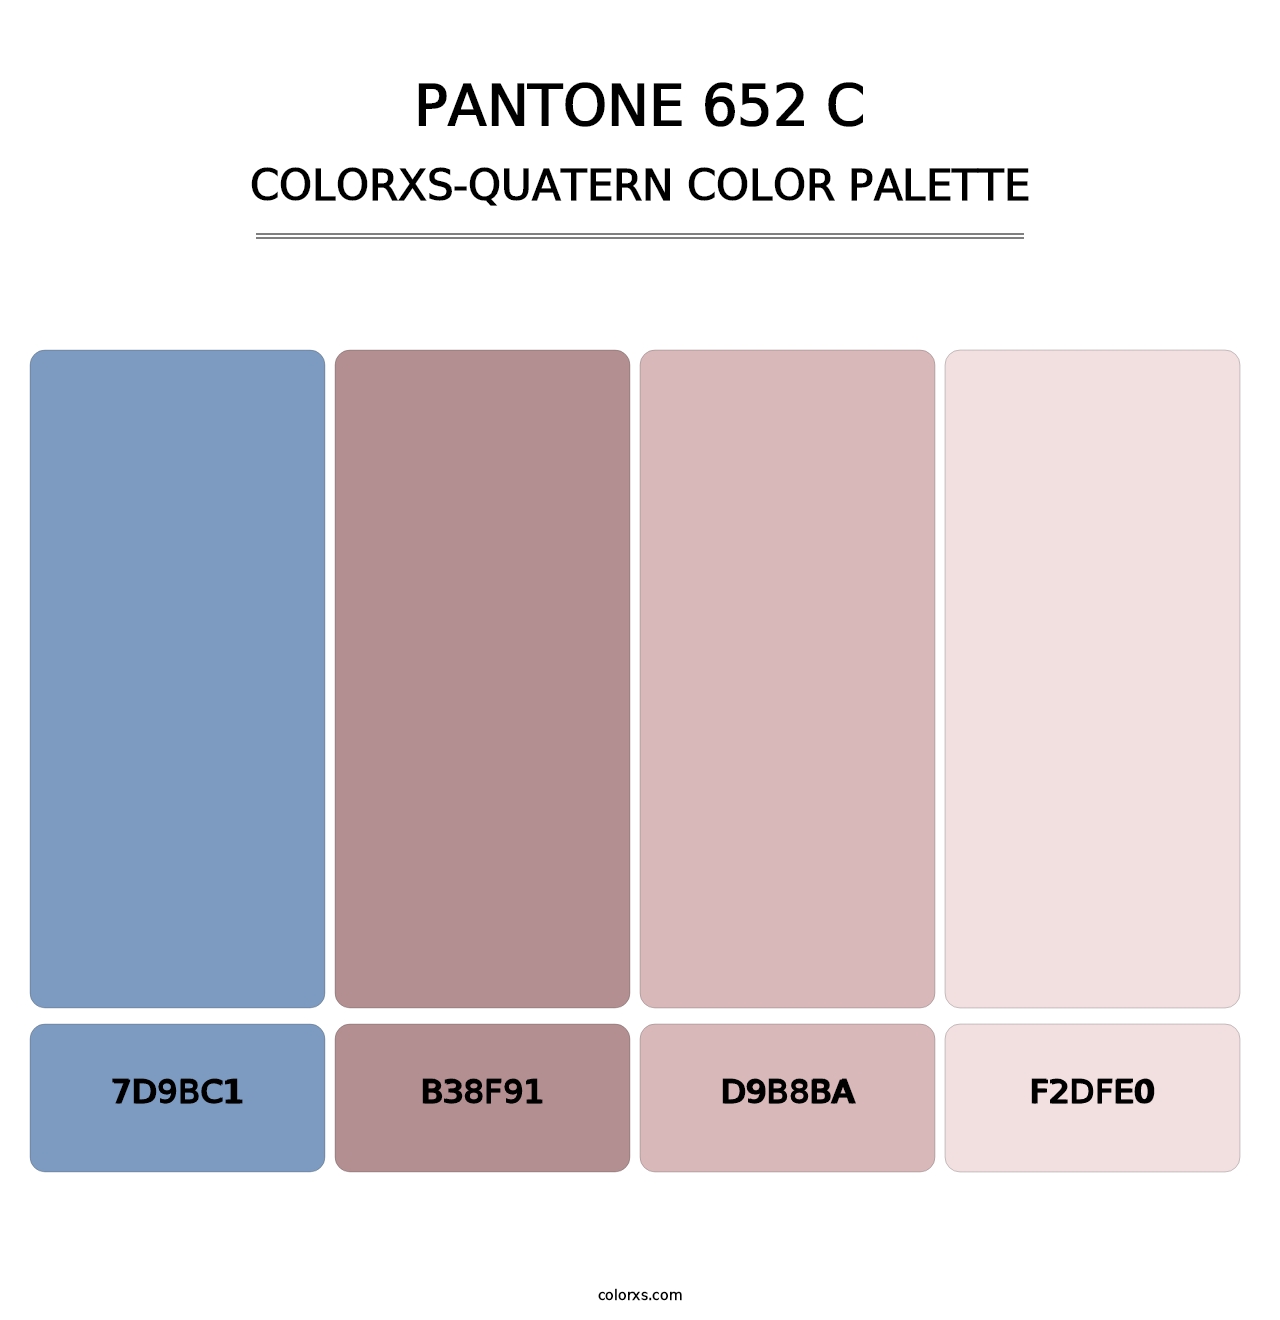 PANTONE 652 C - Colorxs Quatern Palette